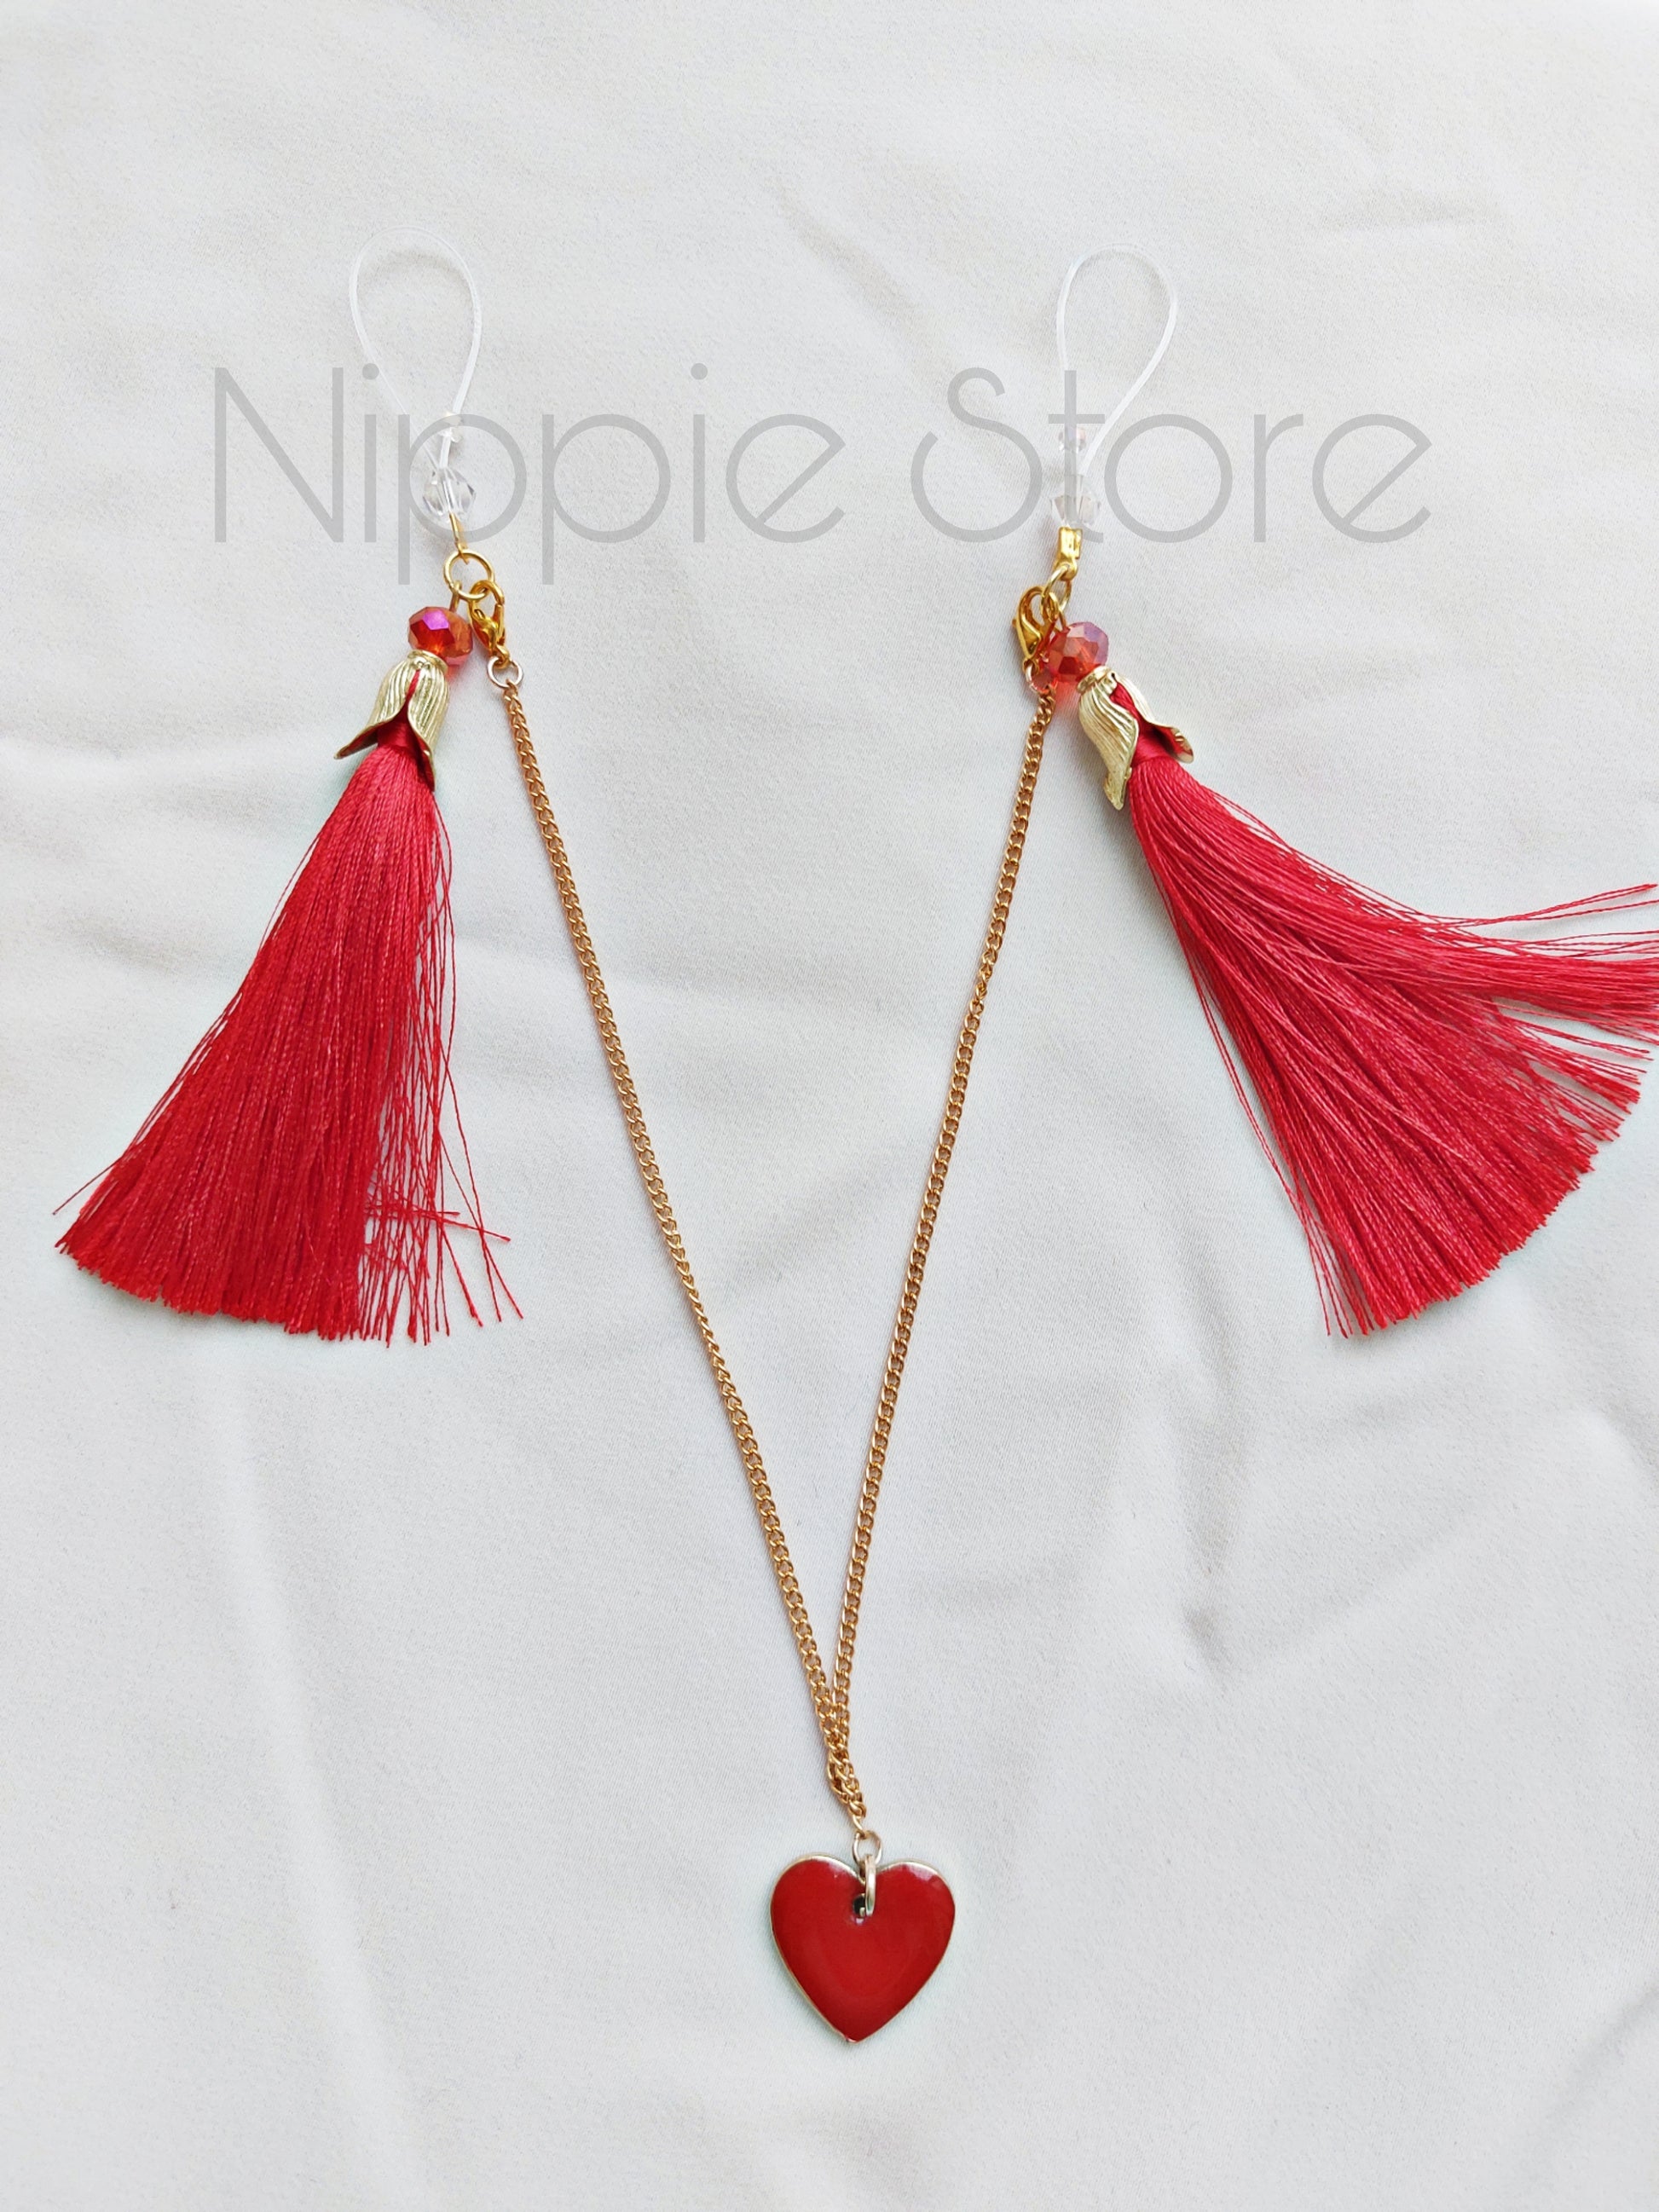 Red tassel nipple jewelry – Nippie Store